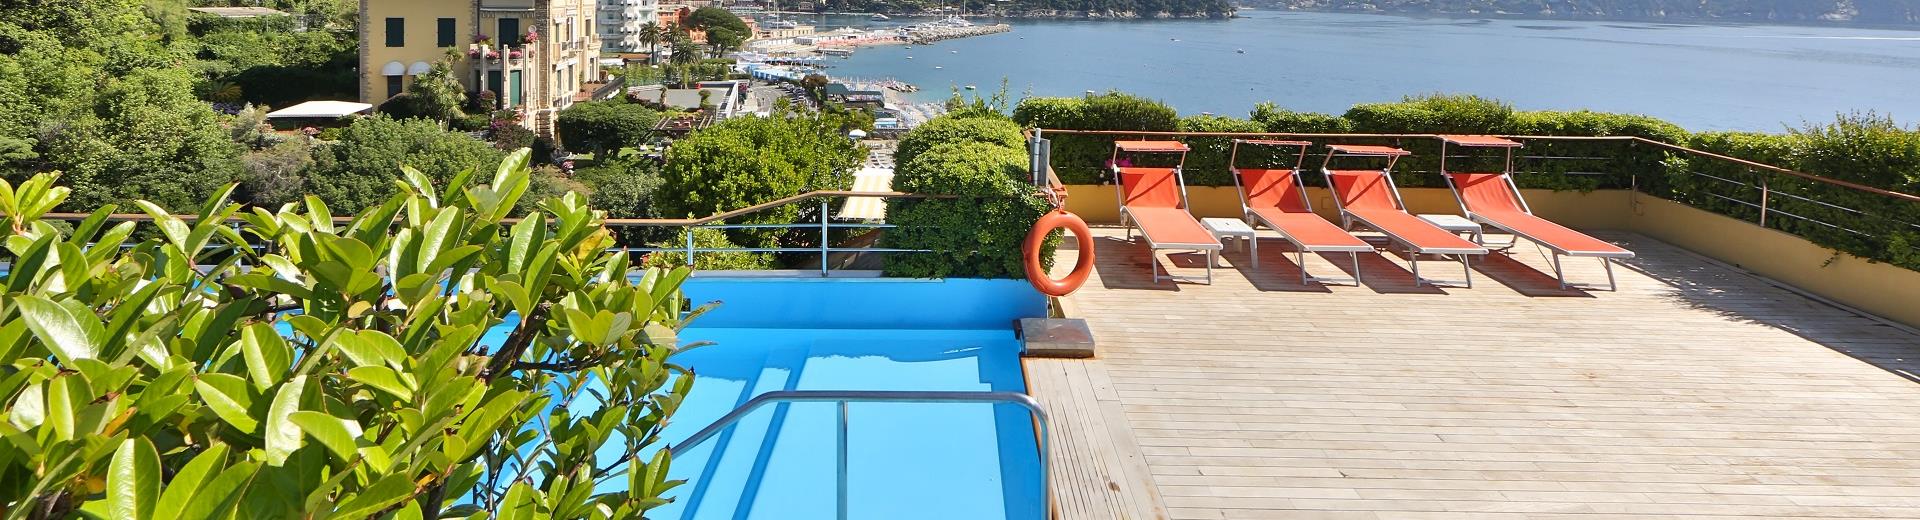 Prova la piscina e l''idromassaggio sulla terrazza del BW Hotel Regina Elena